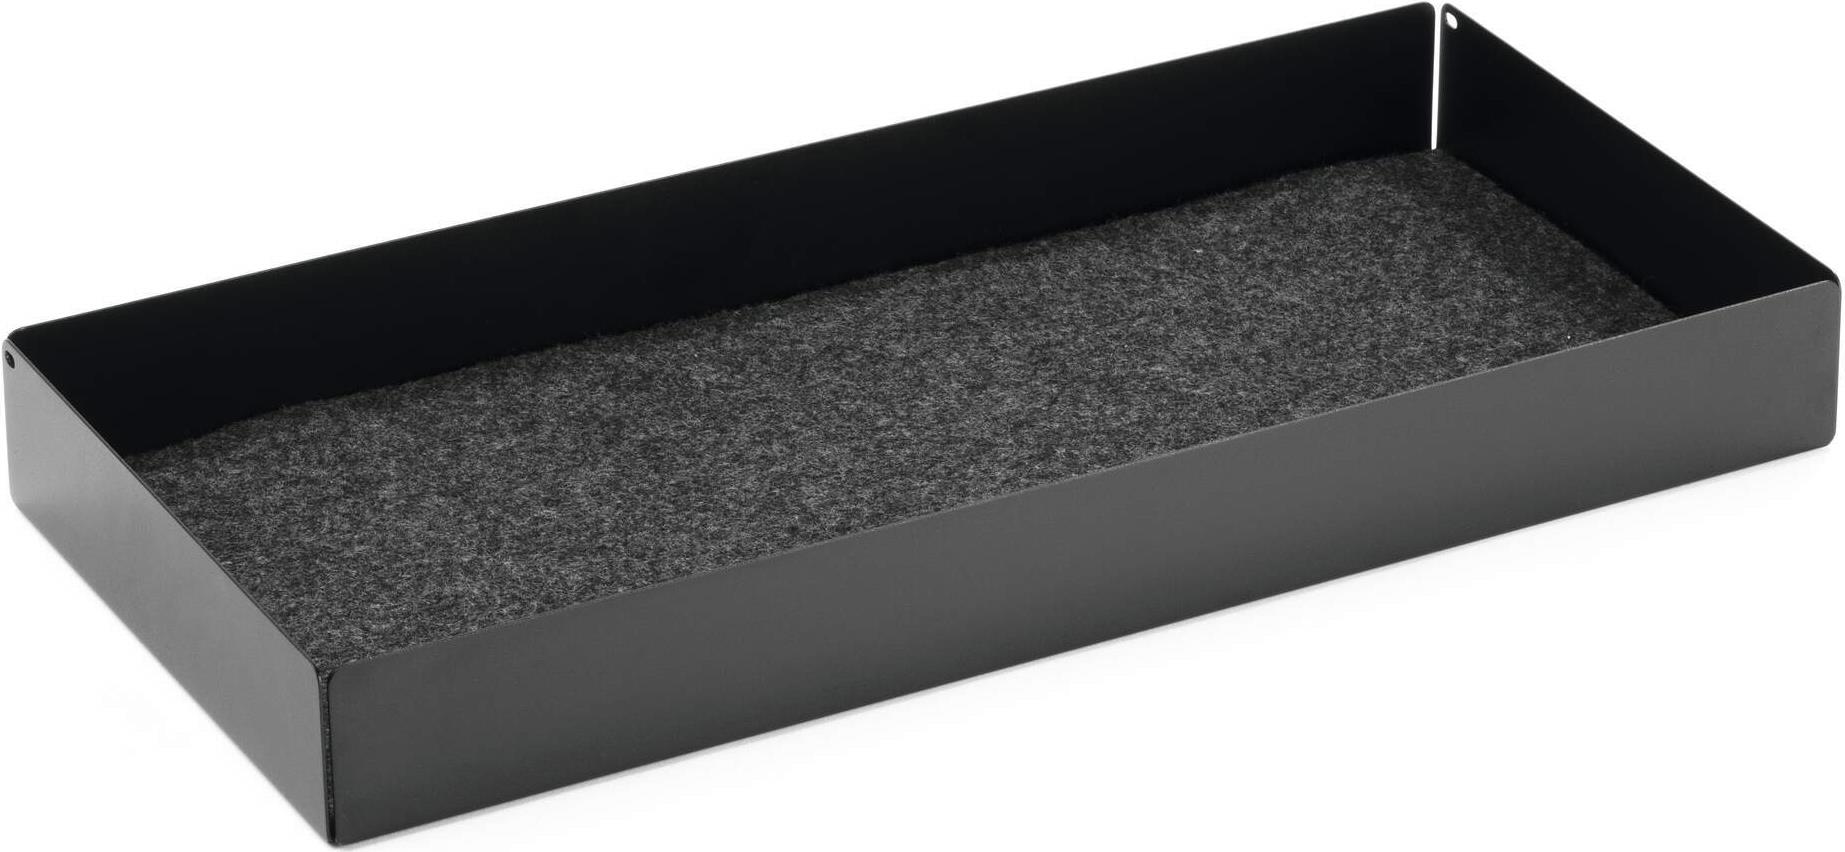 Durable Untertisch-Schublade Schwarz - Schublade zur Verwendung mit dem Monitorständer EFFECT. Clean Desk: die Schublade bietet ausreichend Stauraum für Utensilien oder Ladekabel. Sicher verstaut: mit geräuschhemmender Filzeinlage in der Schublade. Umweltfreundlich und ressourcenschonend: Die Führungsschienen werden ohne zusätzlichen Materialverbrauch direkt aus dem Boden der Schubladenbox gewonnen. <ul><li> Verwendung für Produkt: DURABLE Monitorständer EFFECT 508158 </li><li> Maße: 46,8 x 5,3 x 22,1 cm (B x H x T) </li><li> Tragfähigkeit der Schublade: 5 kg </li><li> Farbe: schwarz</li></ul>  (508201)